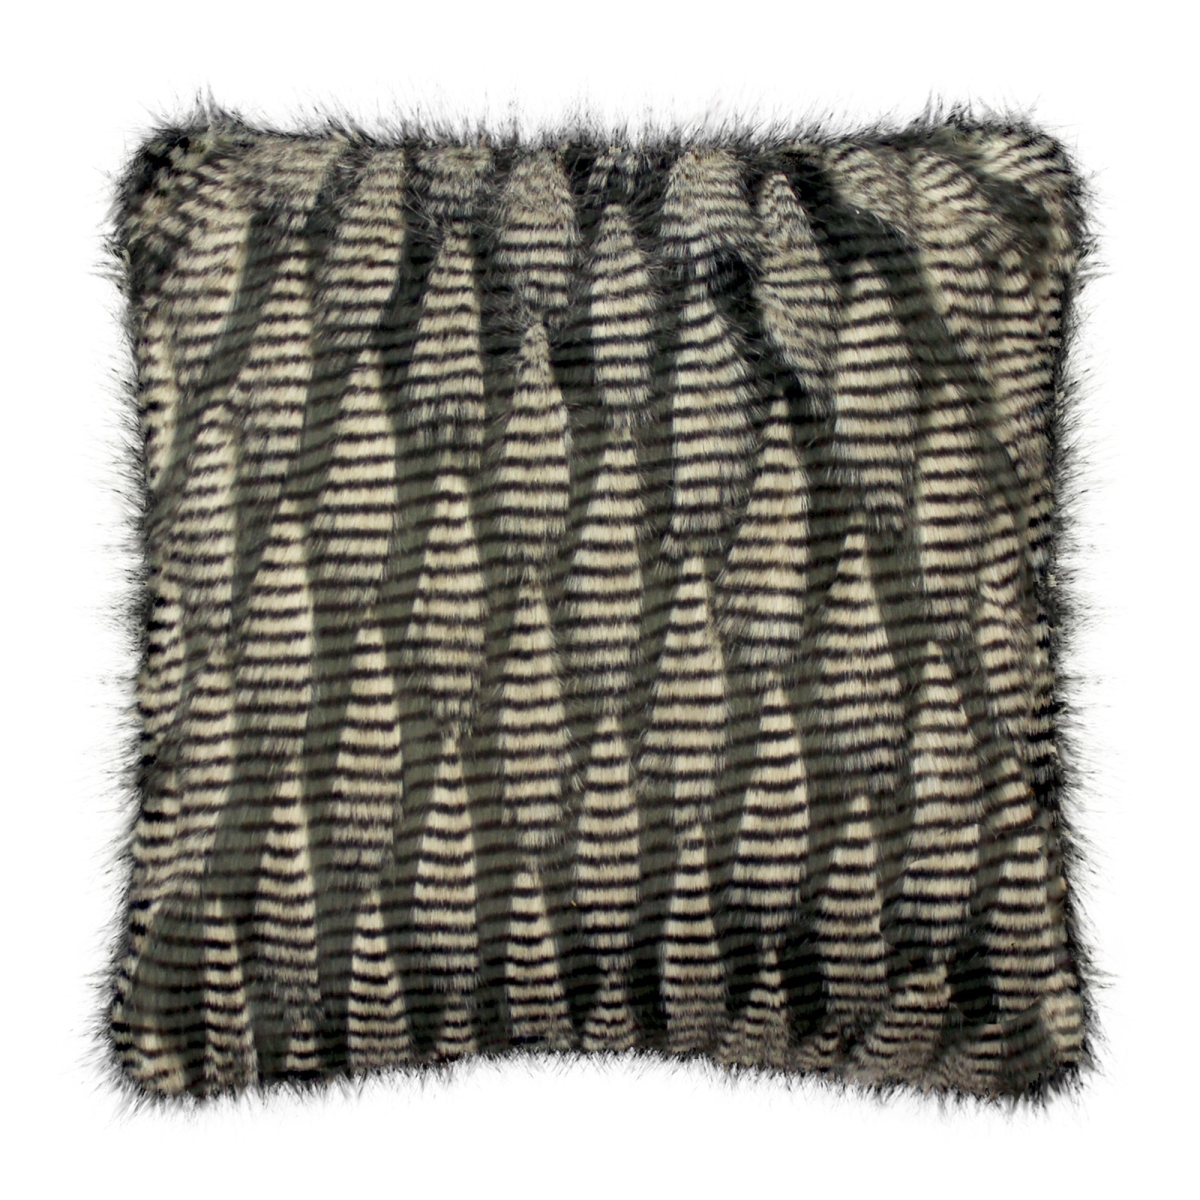 Sq-ph-jasff-1818 18 X 18 In. Jacquard Faux Fur Throw Pillow Cover